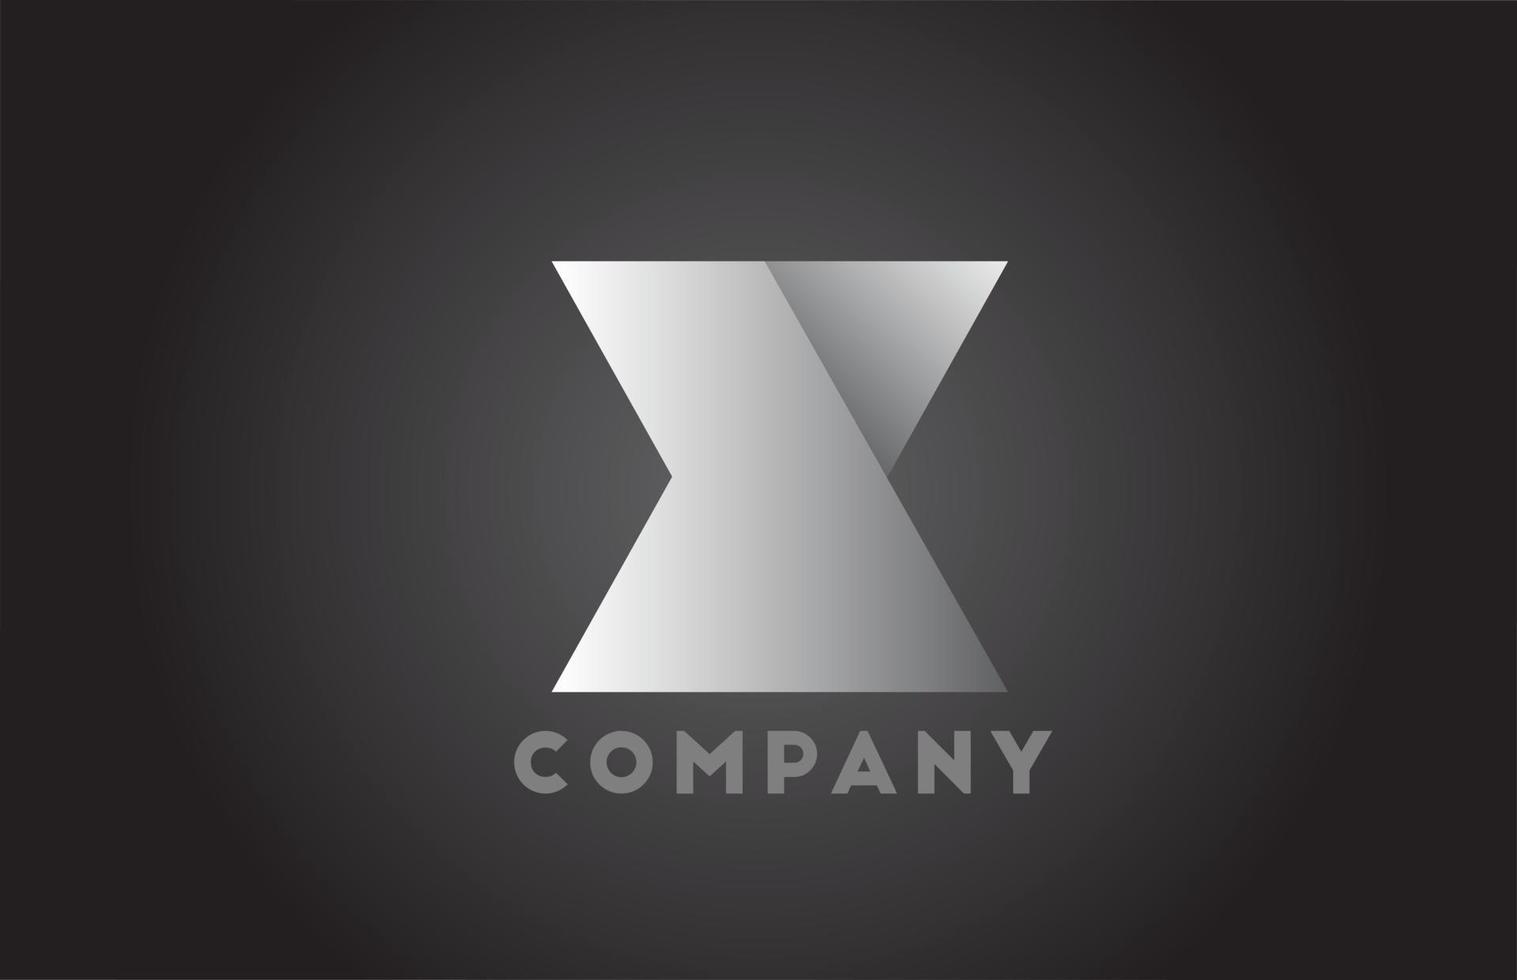 Logotipo de letra del alfabeto geométrico x blanco y negro para empresas. Brading corporativo y rotulación con diseño futurista y degradado para empresa. vector